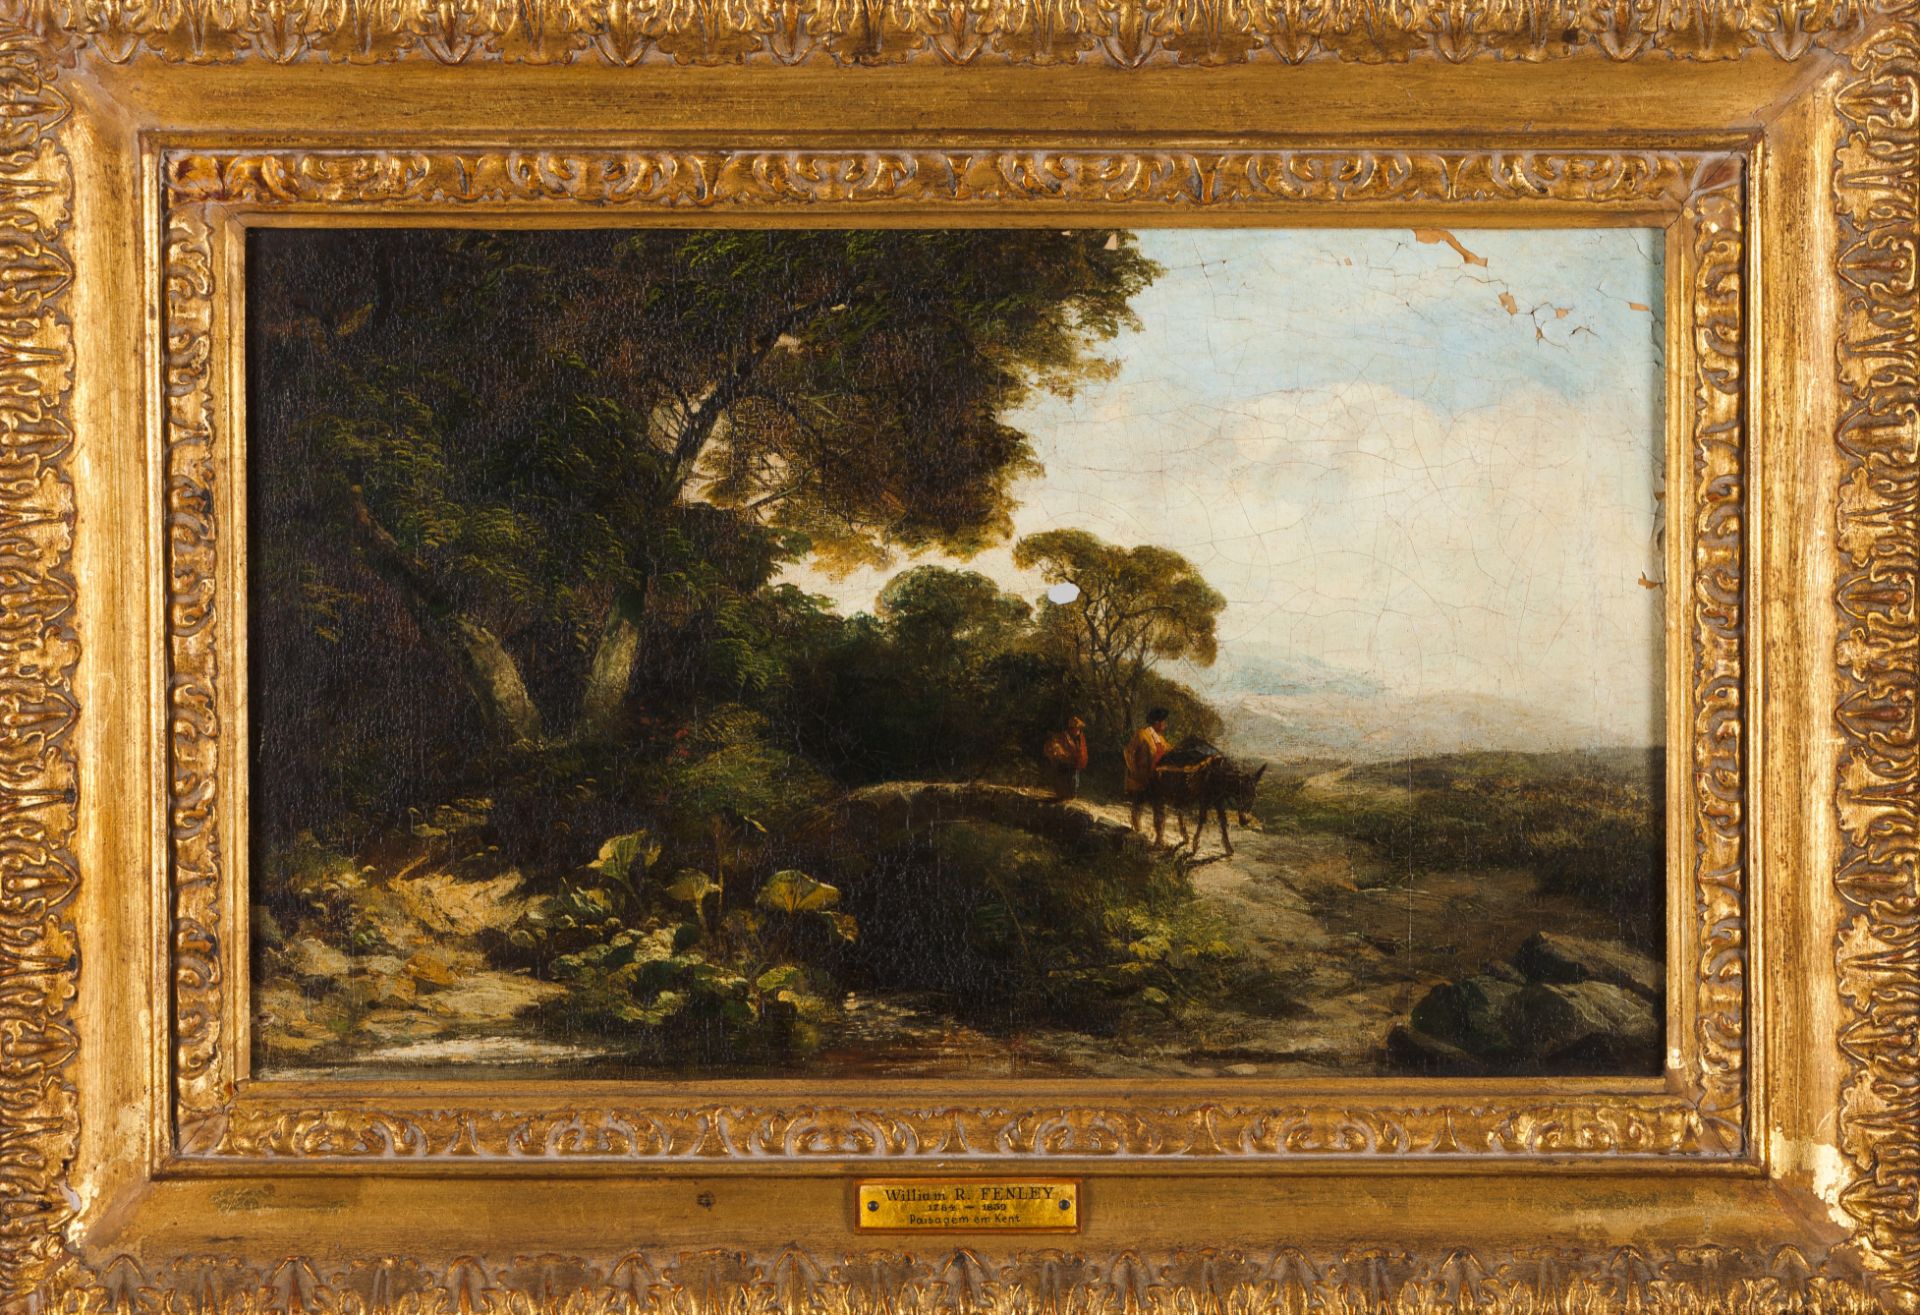 English school, 19th centuryA landscape in Kent Oil on canvas Attrib. To William R. Fenley (1784-